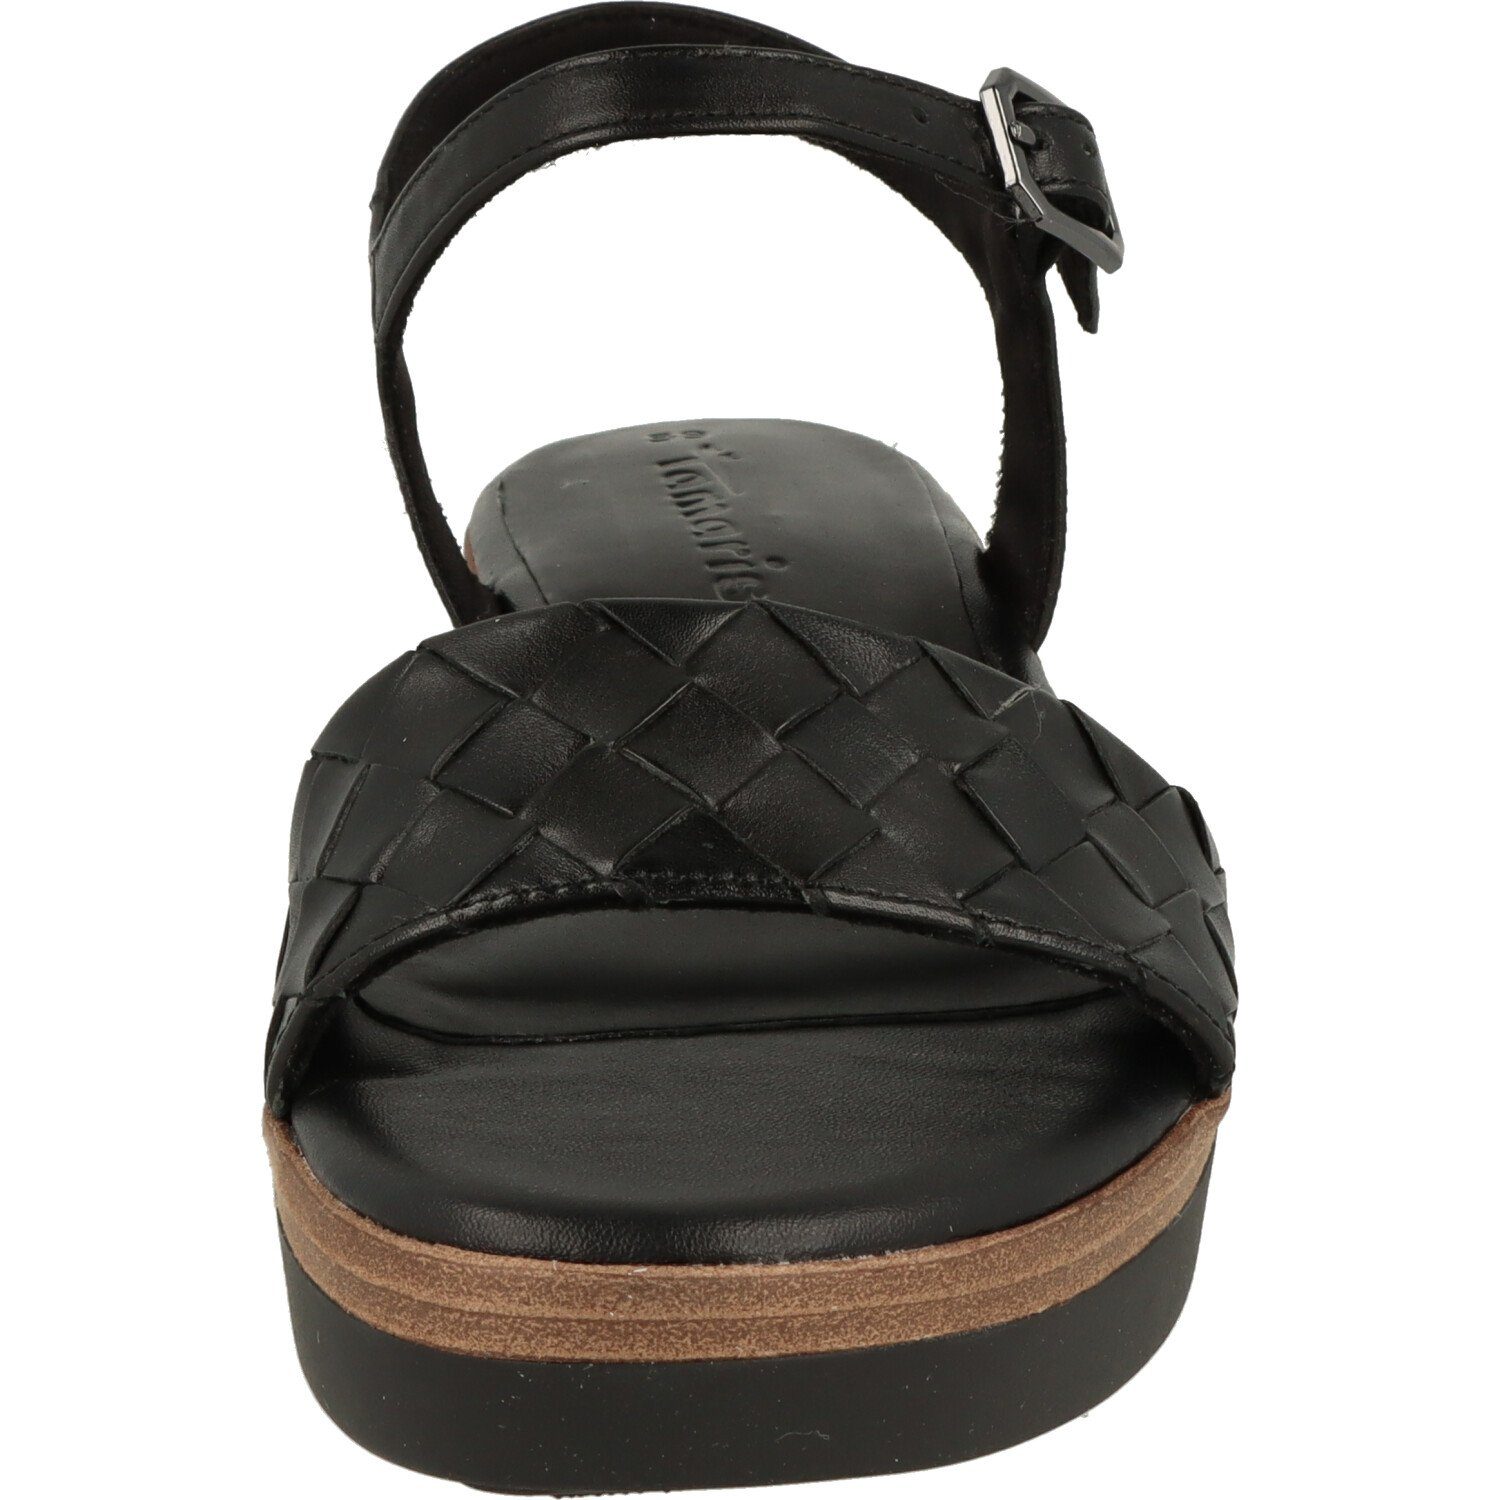 Tamaris Damen Schuhe Sandalette Leder Sandalette 1-28216-20 Komfort Black Riemchen